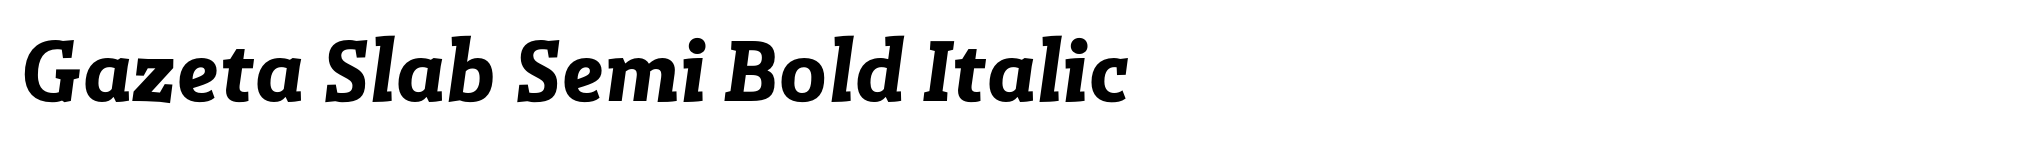 Gazeta Slab Semi Bold Italic image